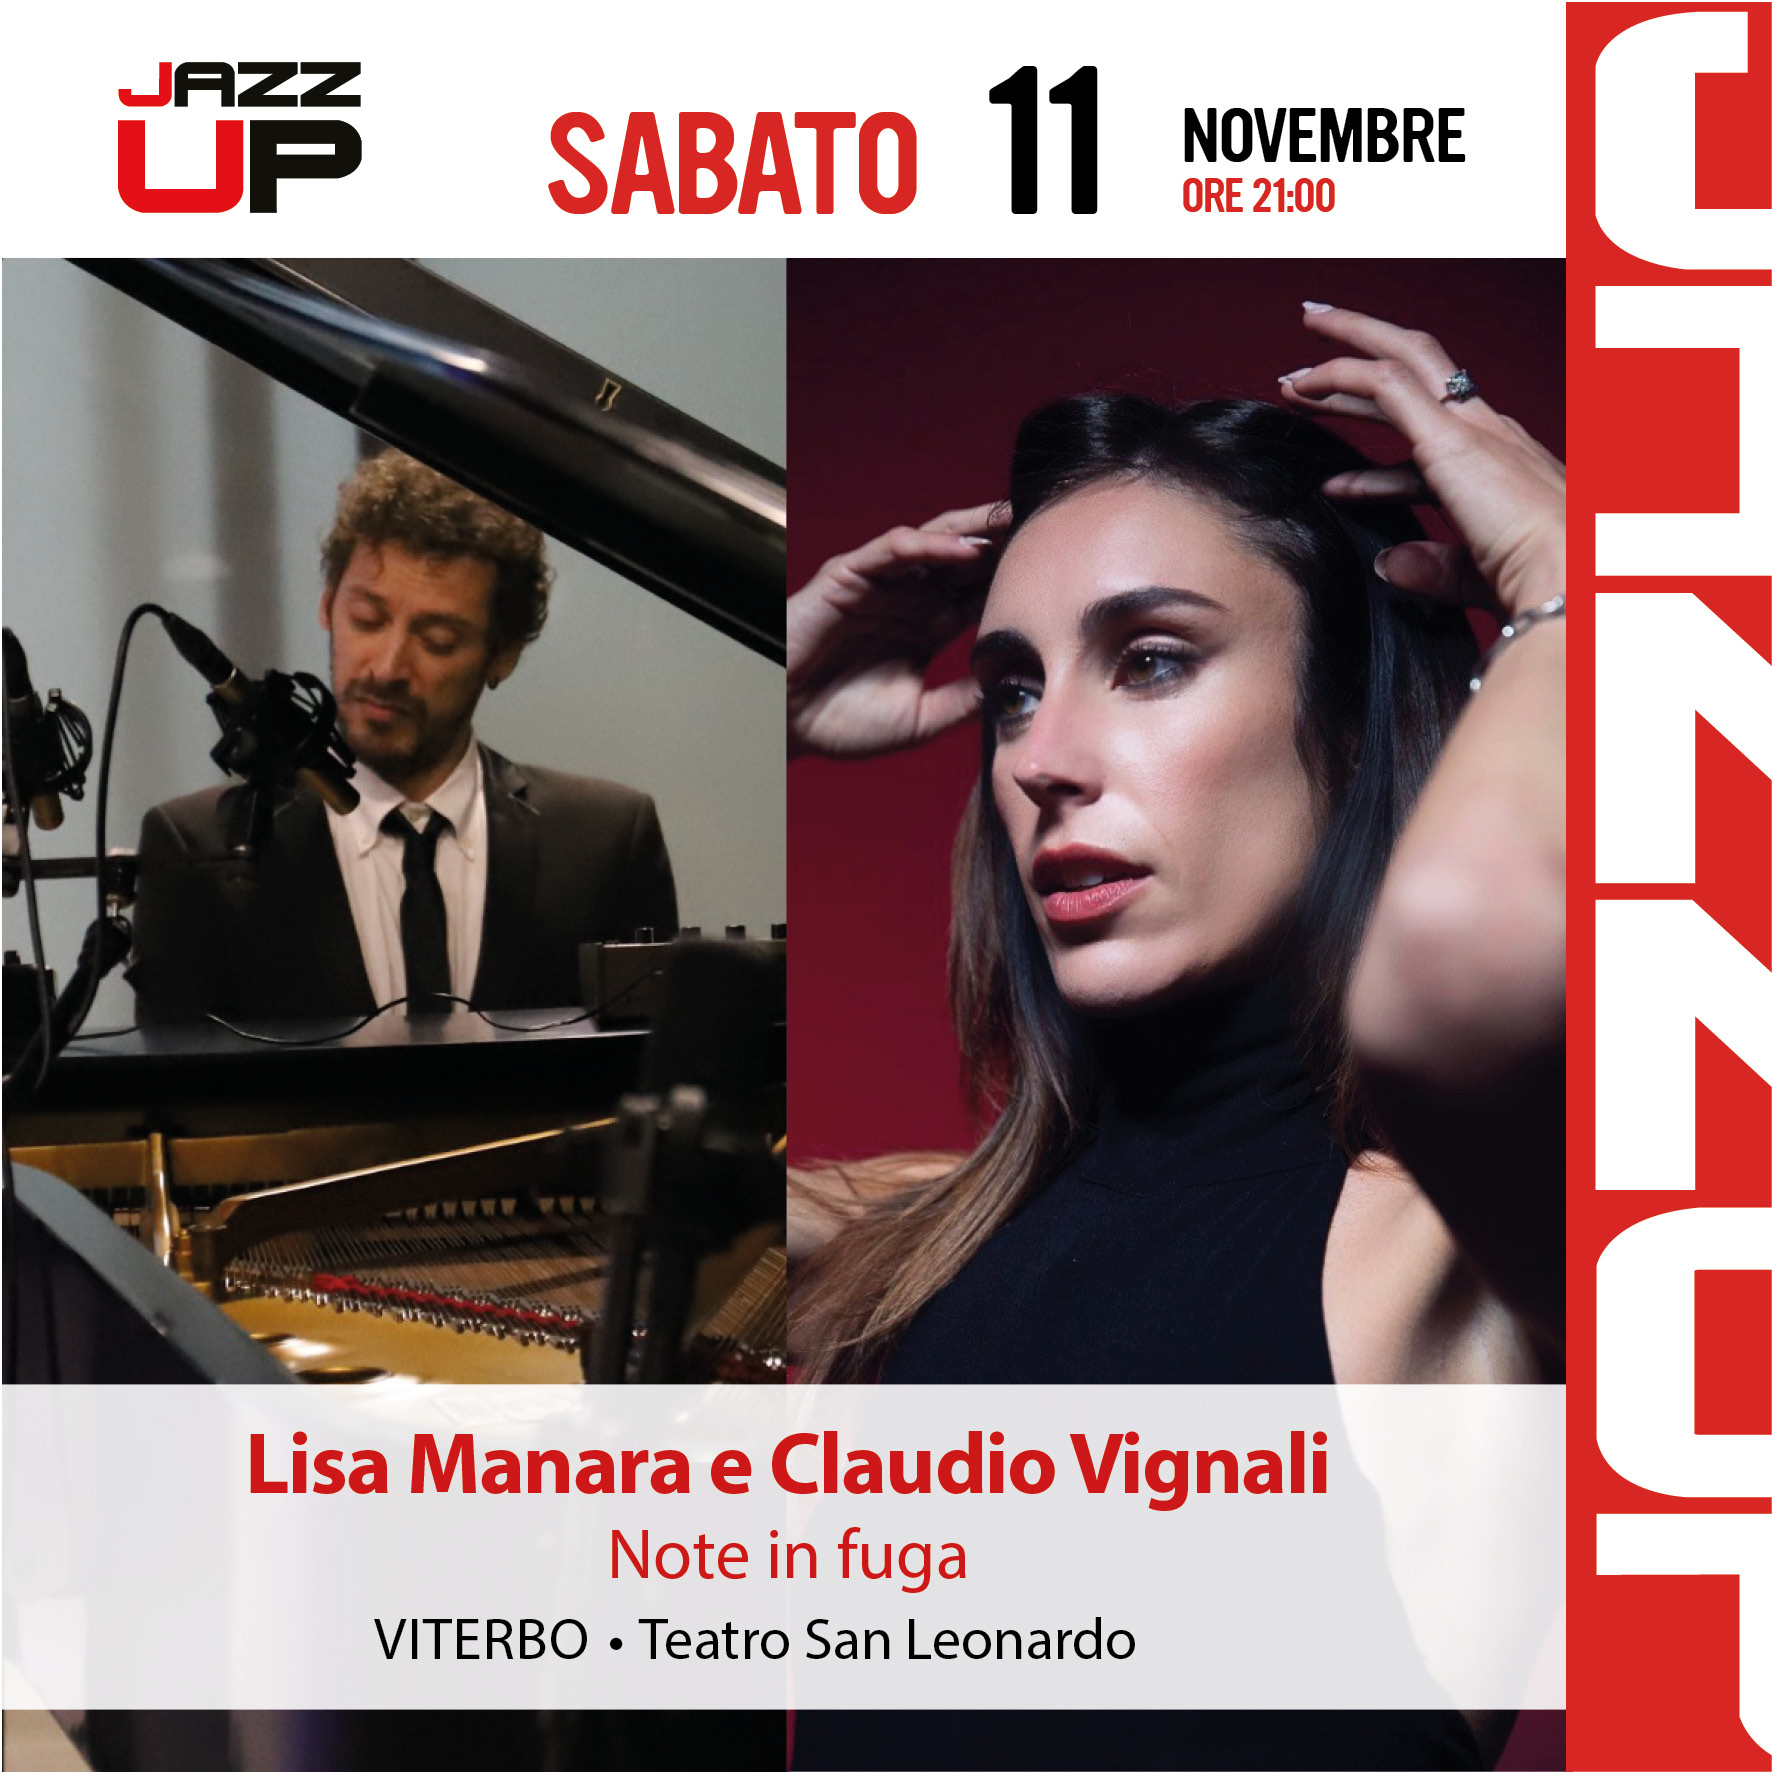 Lisa Manara e Claudio Vignali